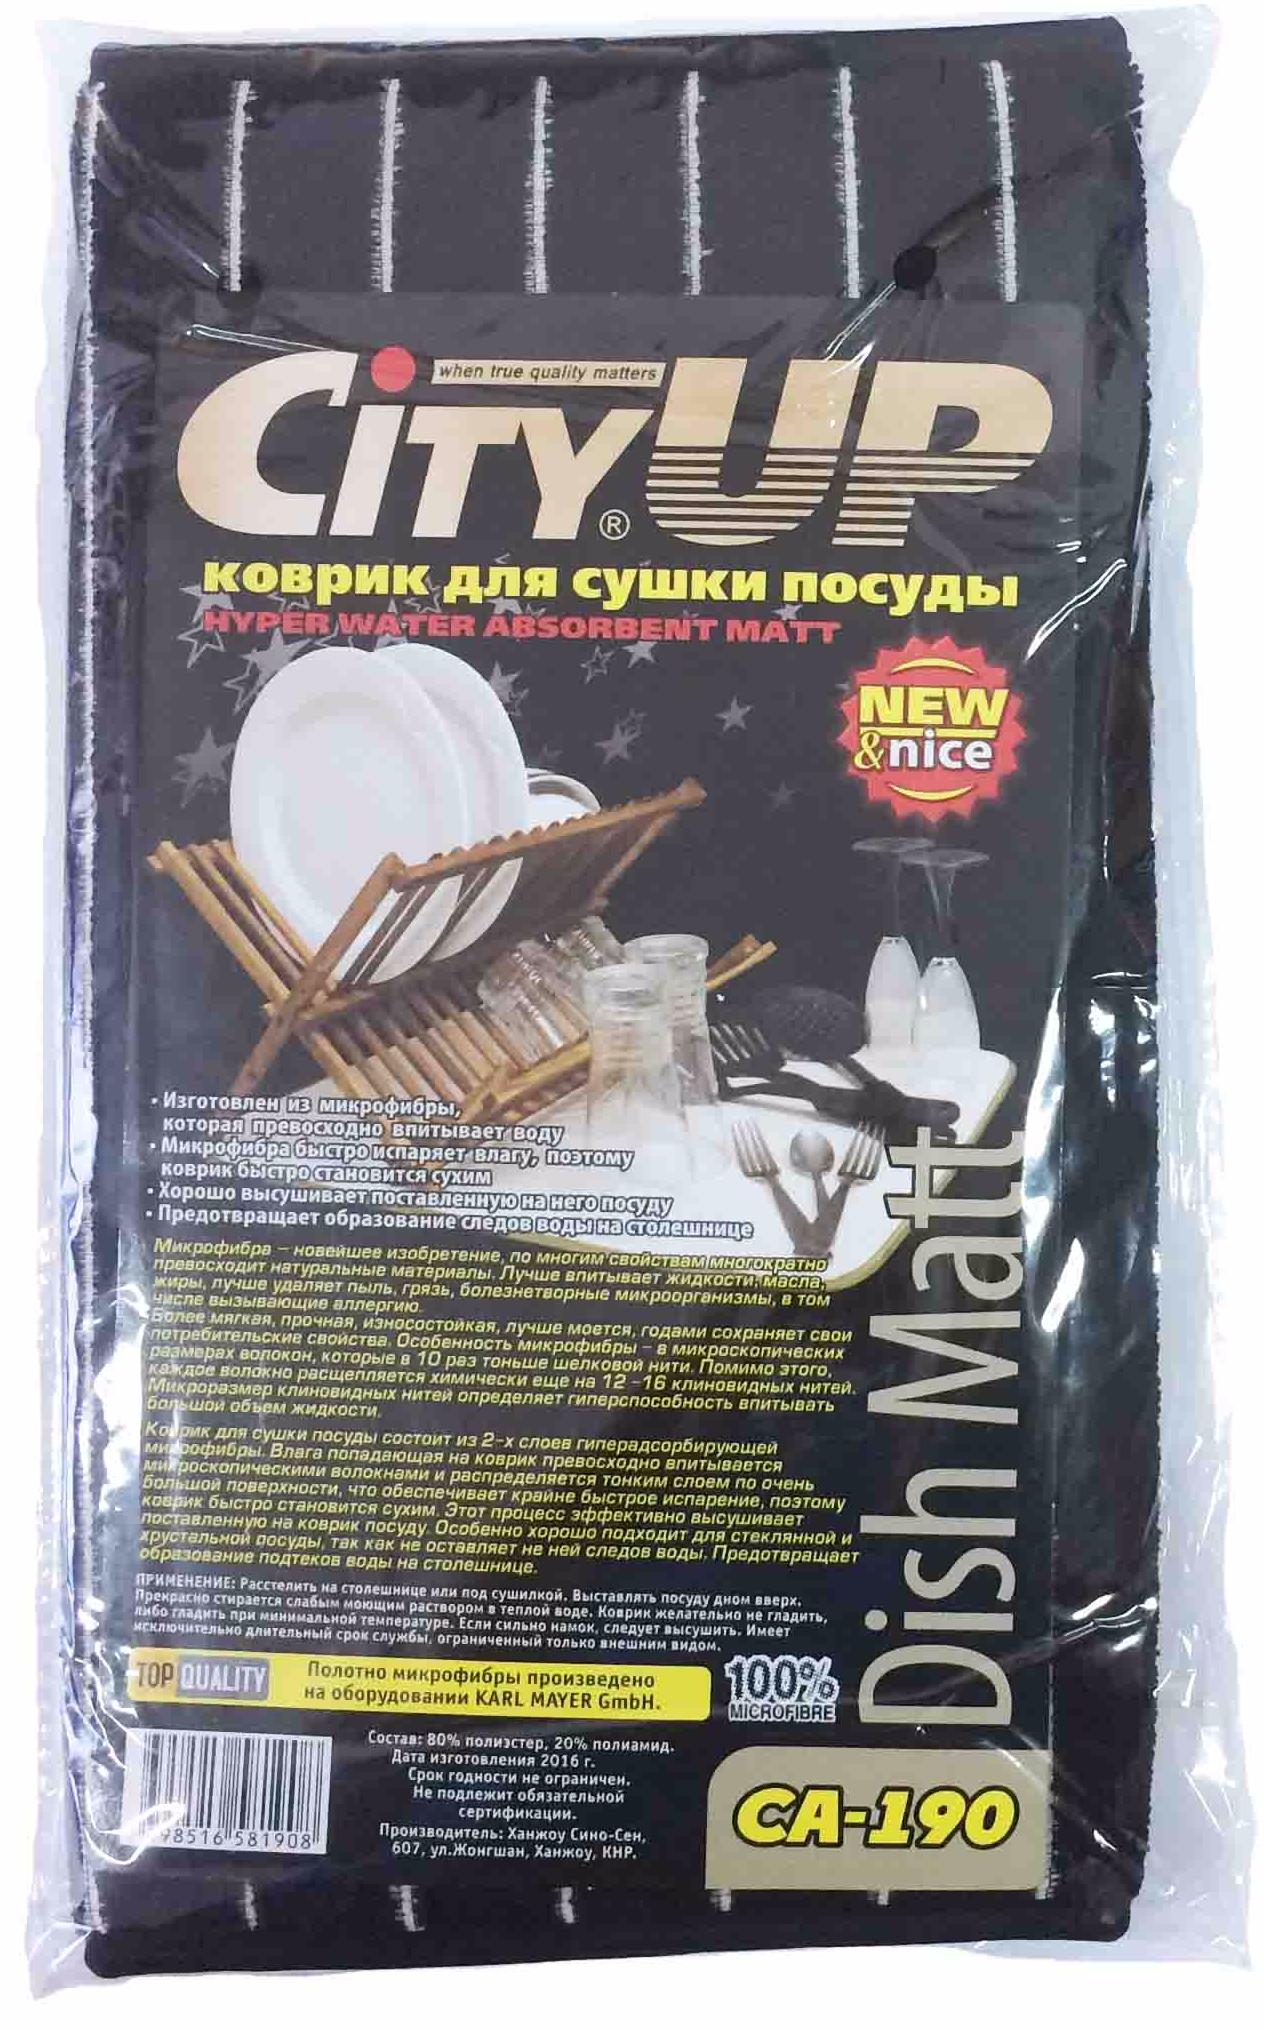 City UP Коврик из микрофибры для сушки посуды 40*45 см